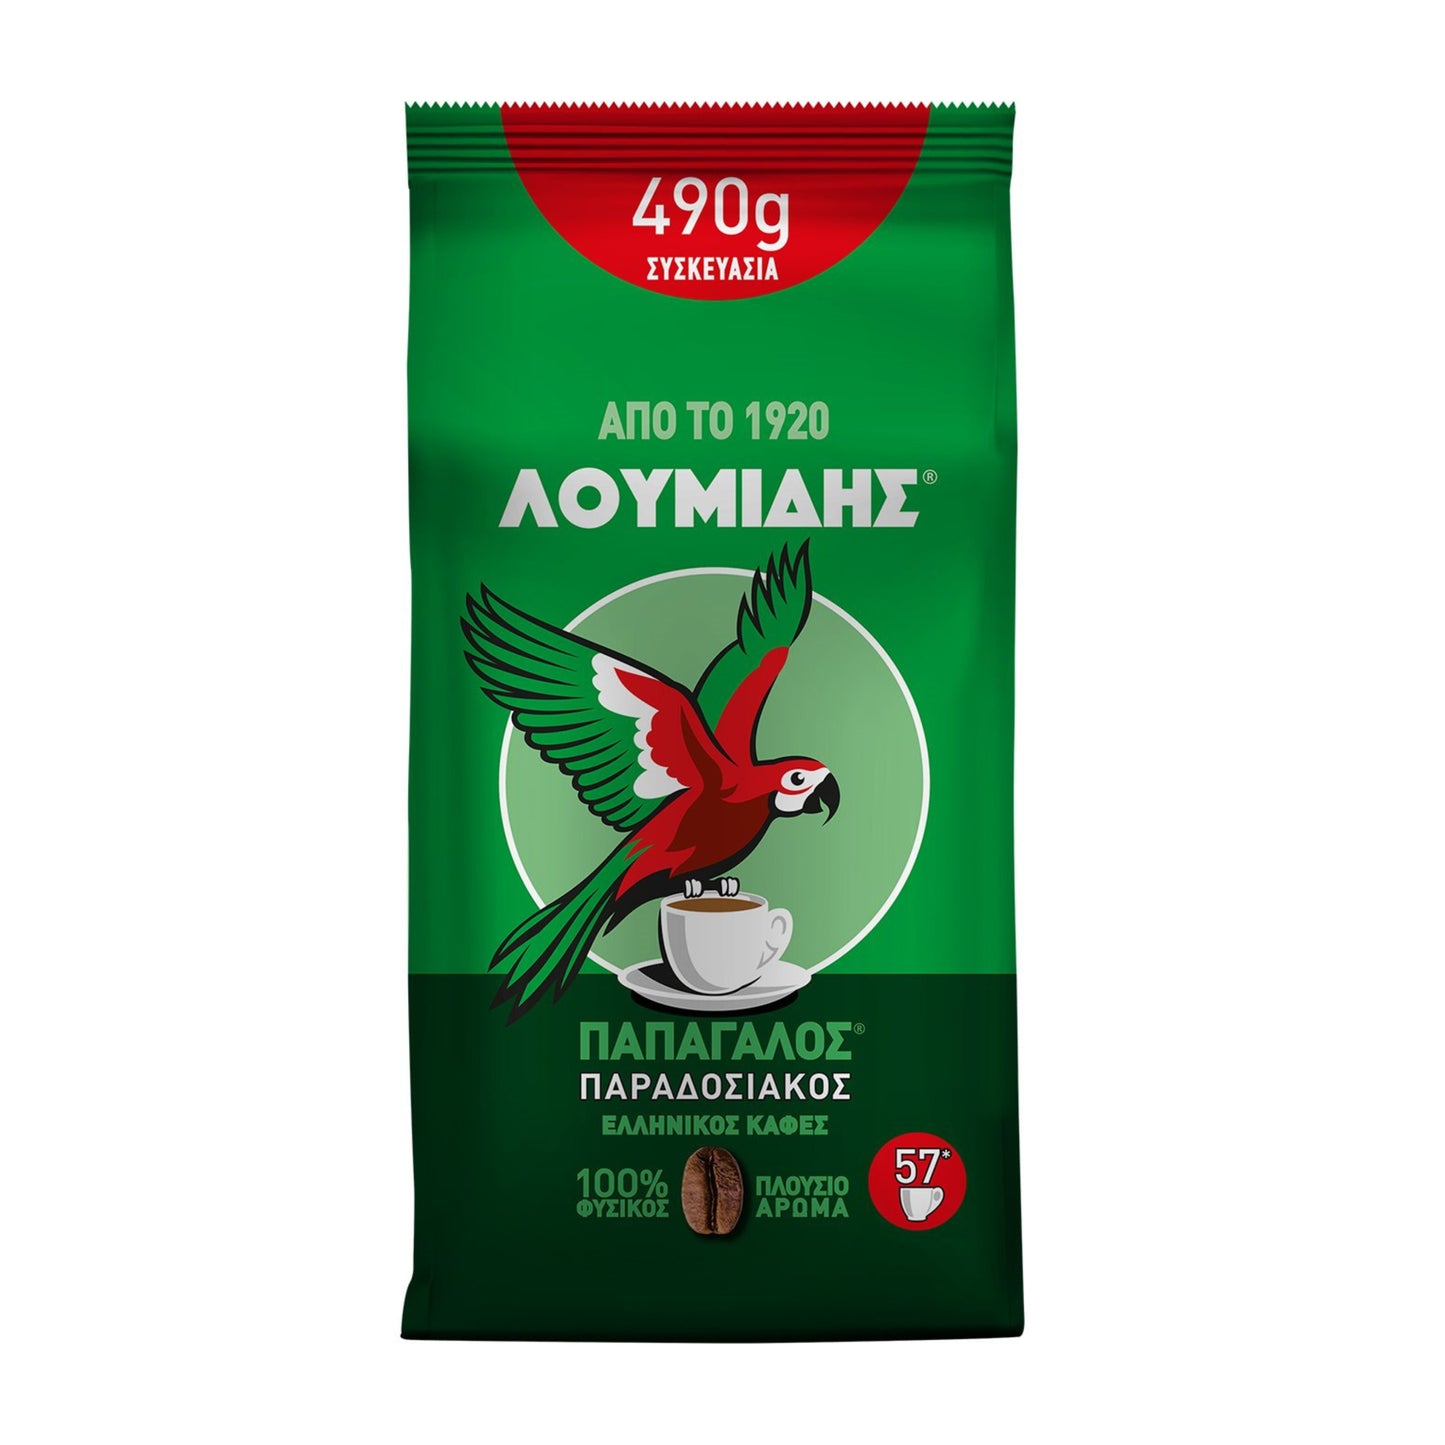 Caffè greco Loumidis - 490g